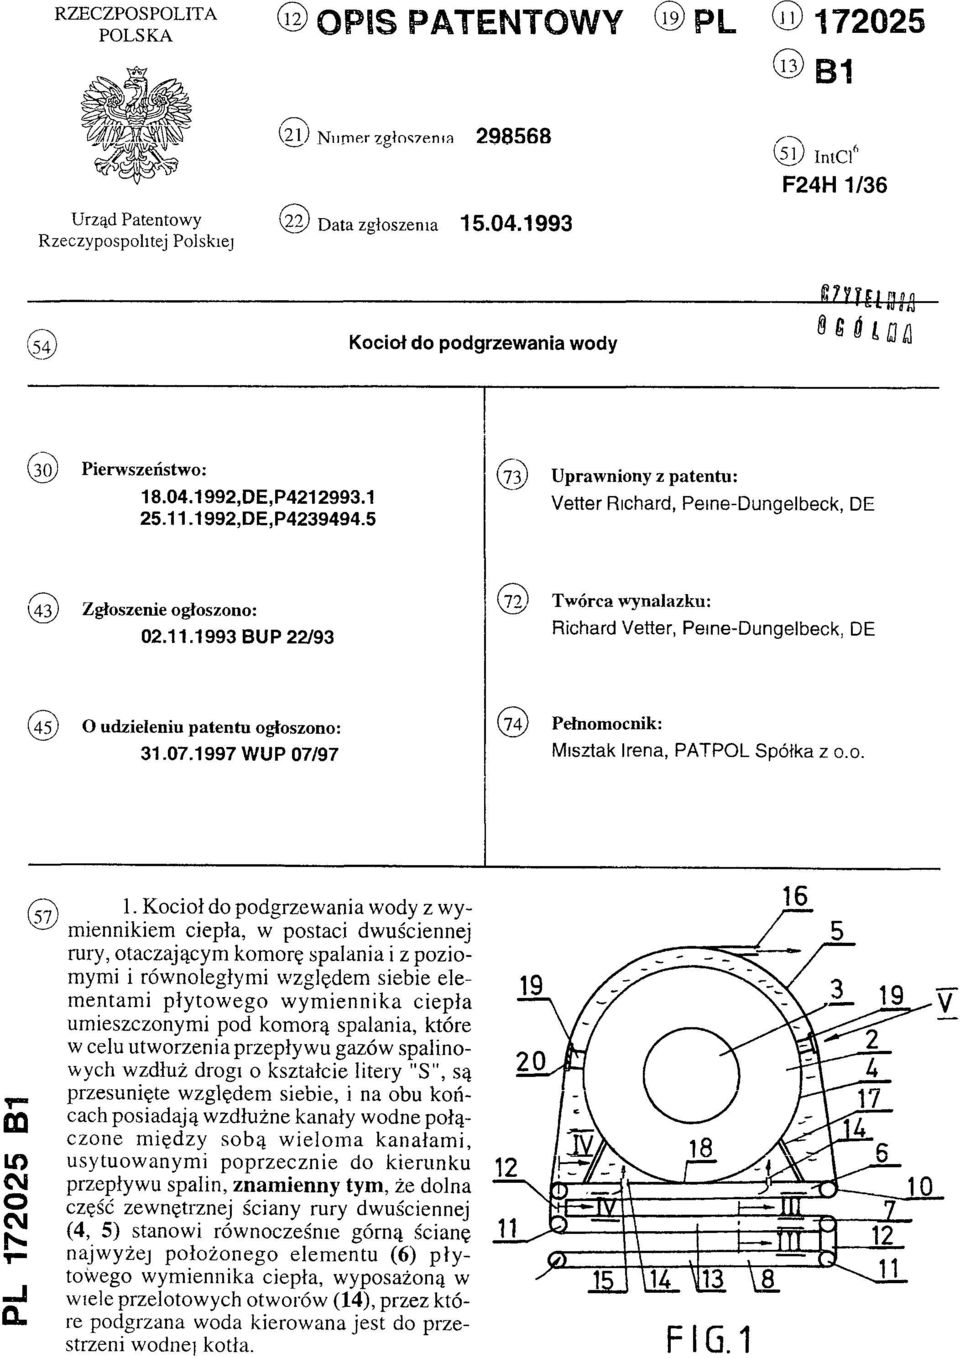 5 (73) Uprawniony z patentu: Vetter Richard, Peine-Dungelbeck, DE (43)Zgłoszenie ogłoszono: 02.11.